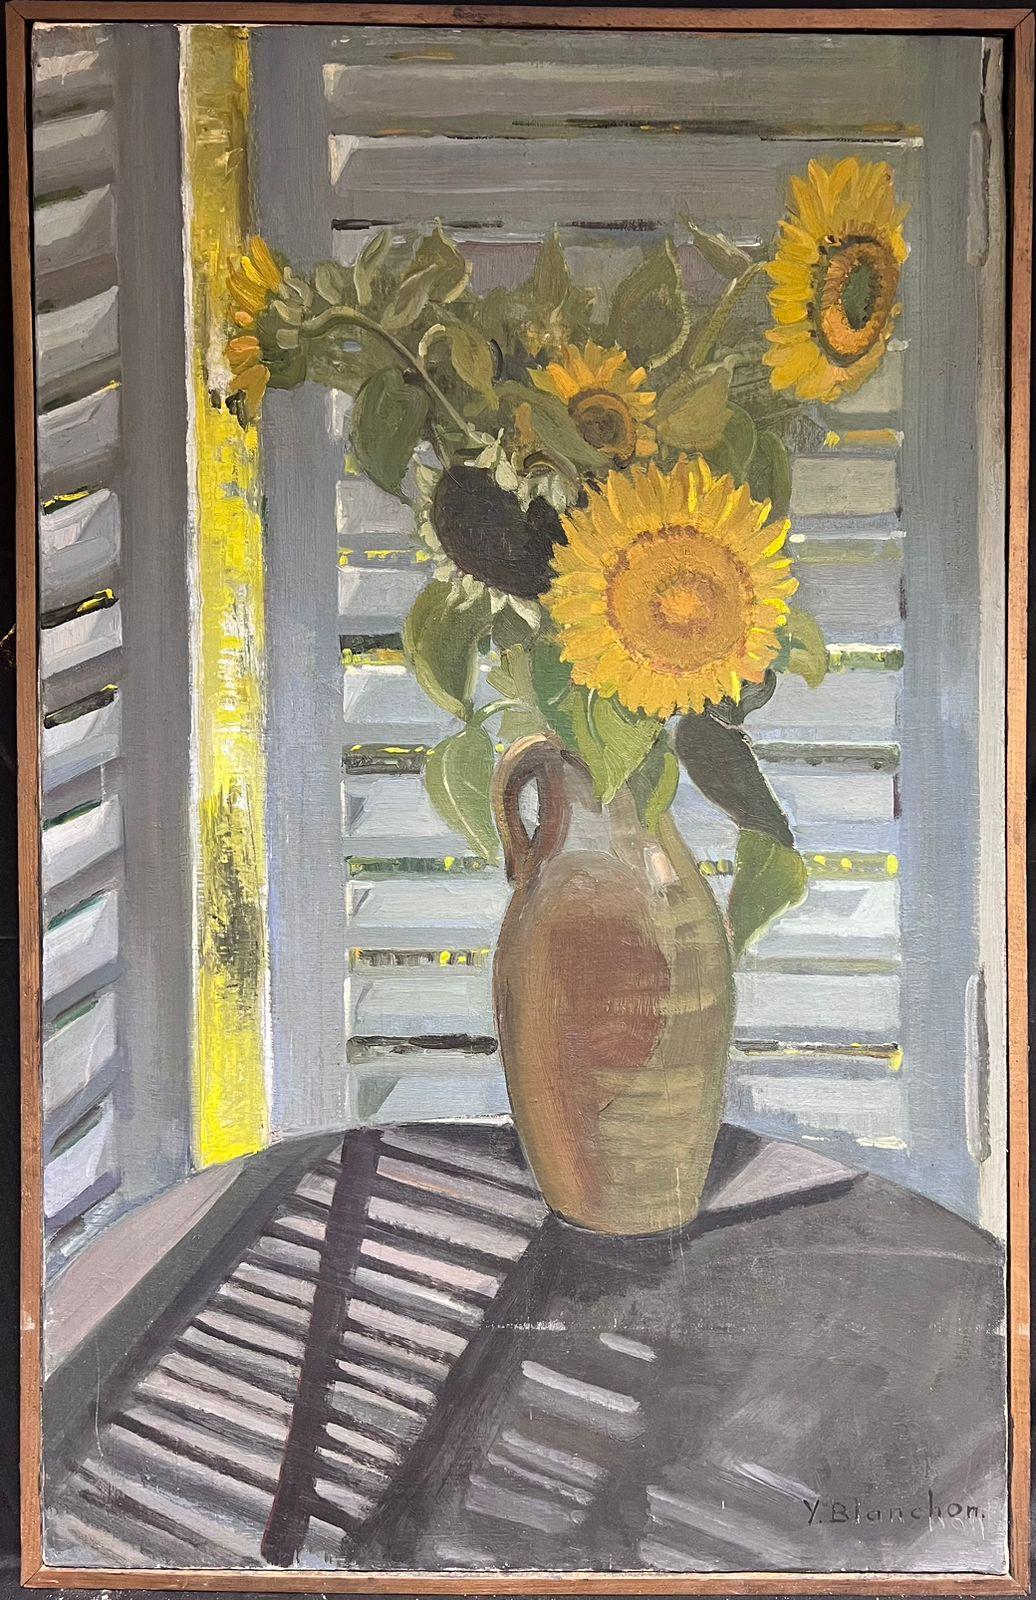 Grand vase français des années 1930, signé Sunflowers in, scène de fenêtre intérieure - Painting de French School, 1930's